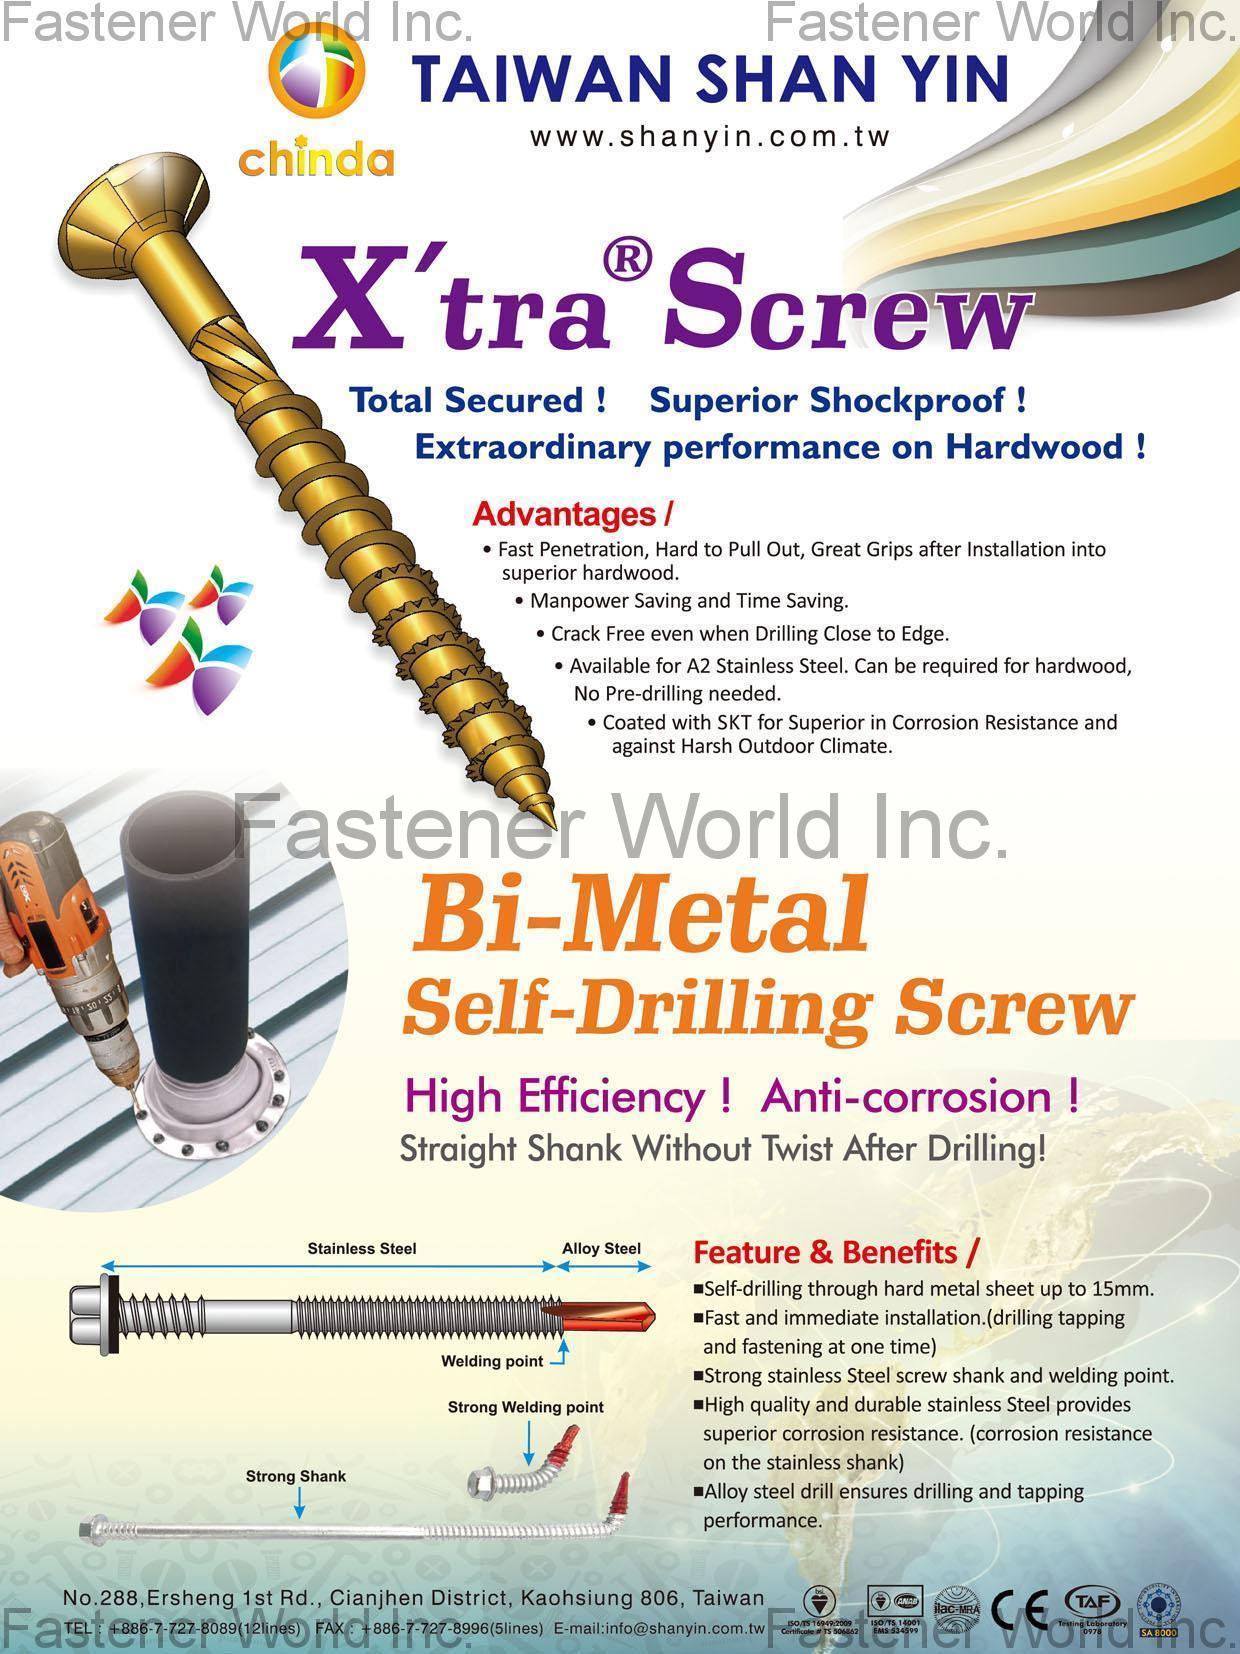 Self-drilling Screws Bi-Metal Self-Drilling Screw